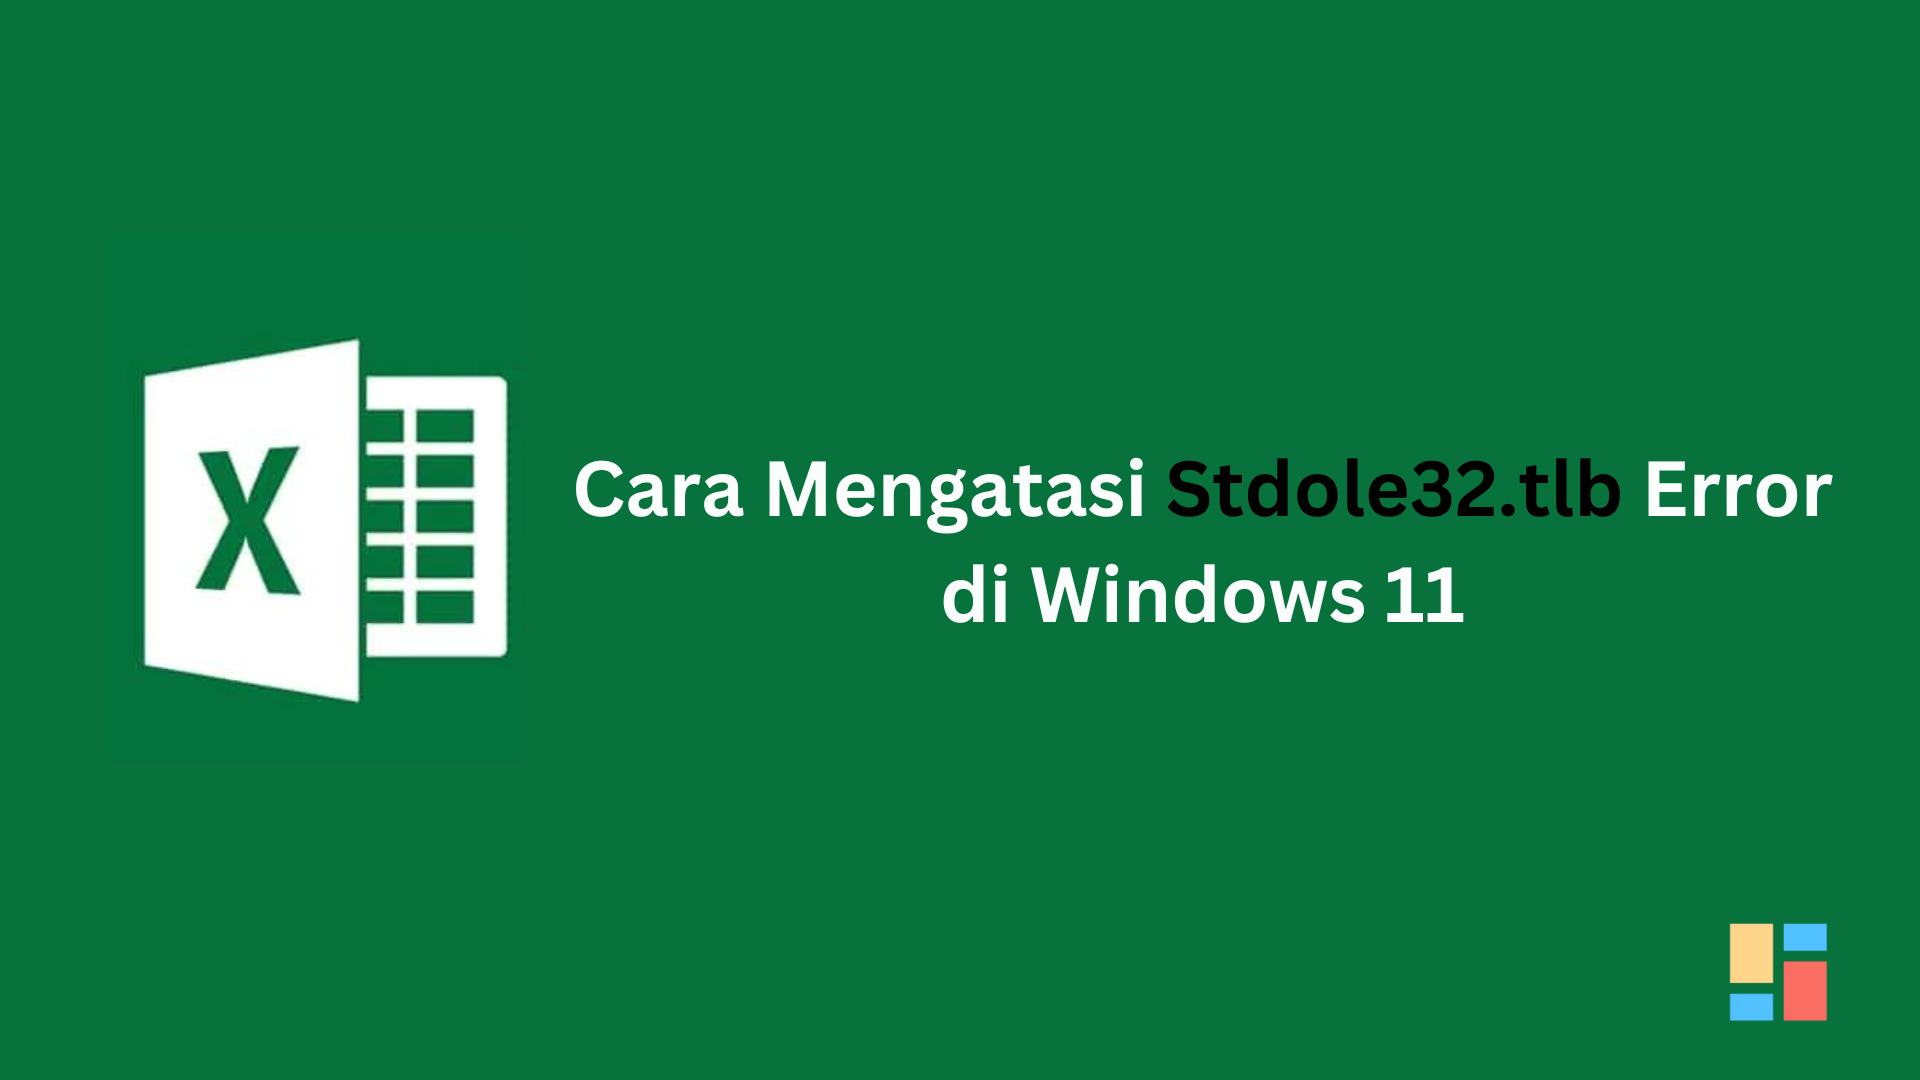 Cara Mengatasi Stdole32.tlb Error di Windows 11